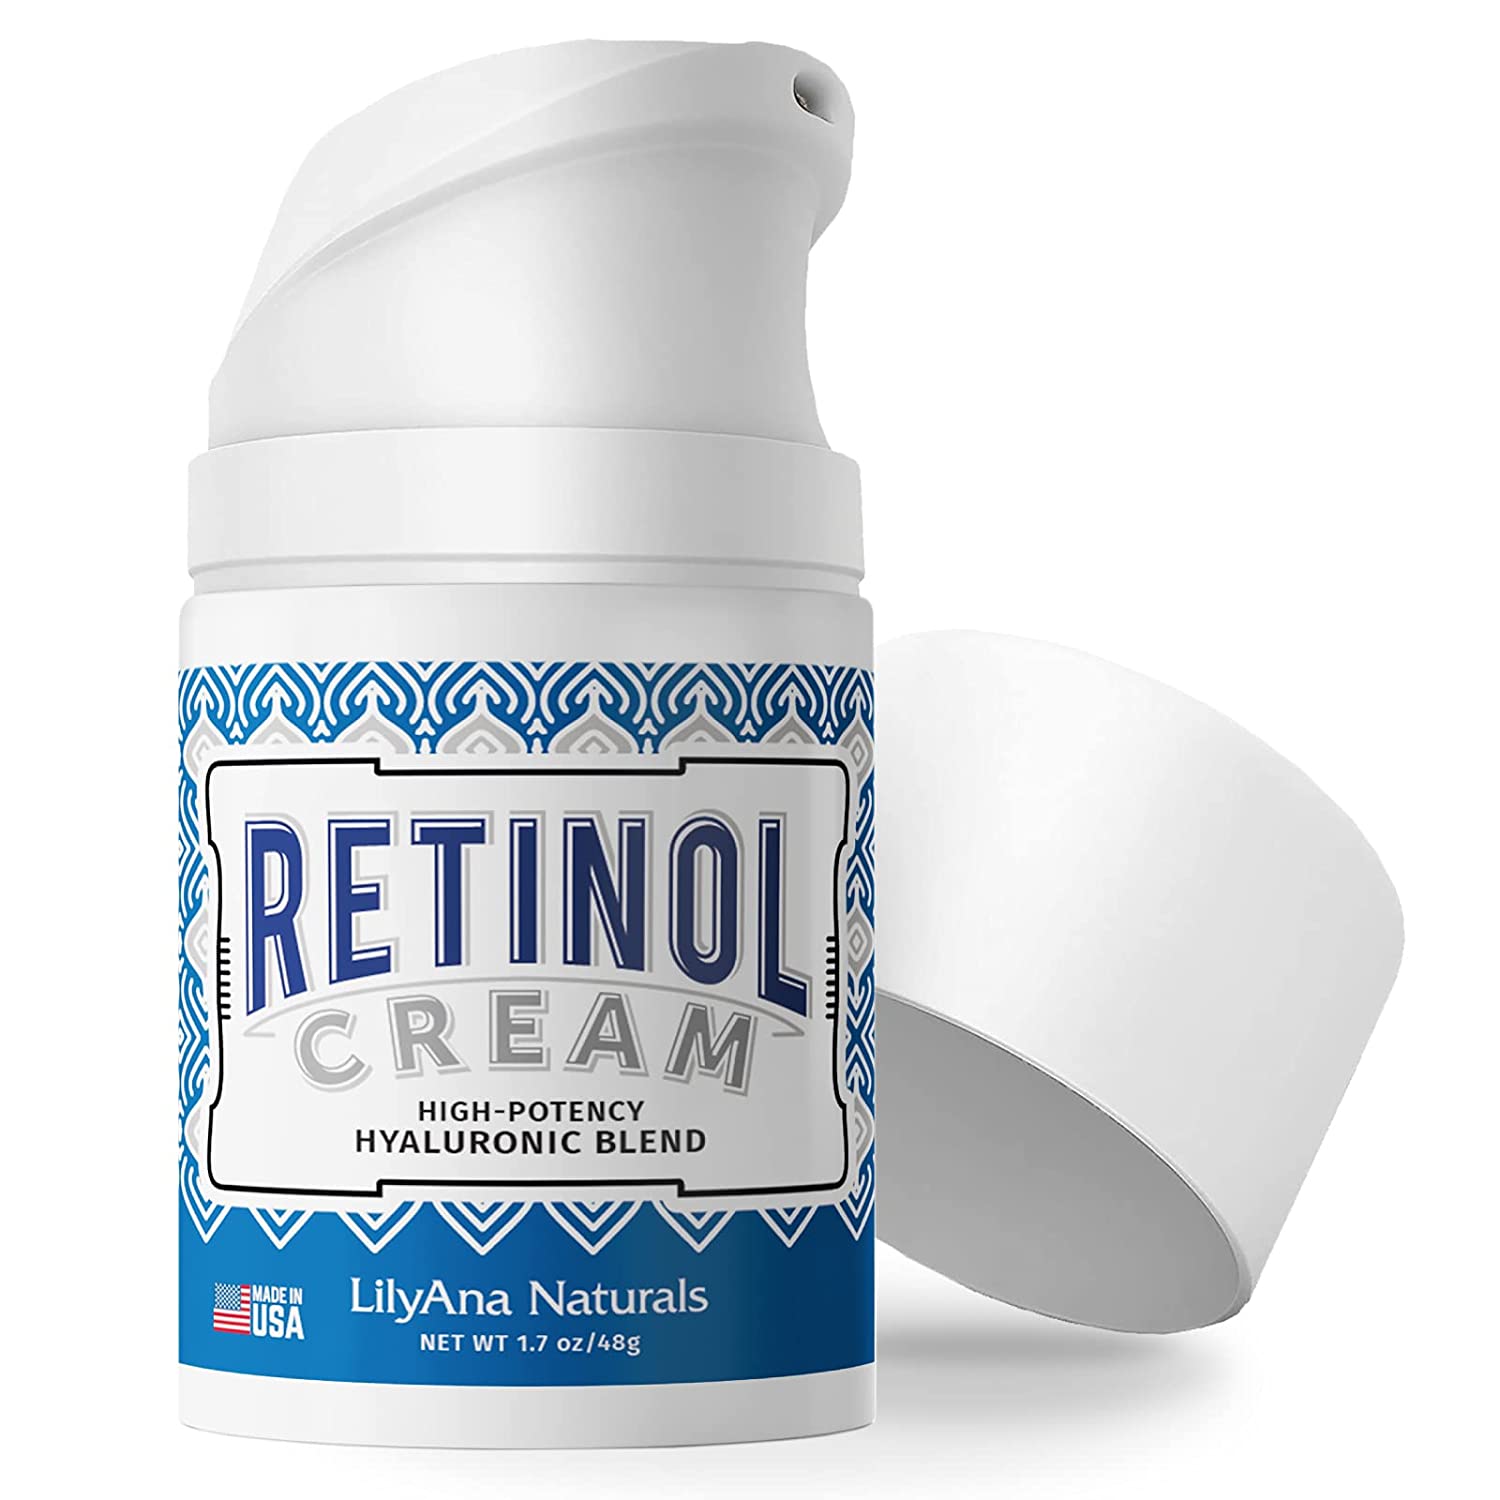 Lilyana Naturals Retinol Cream for Face - 48 g